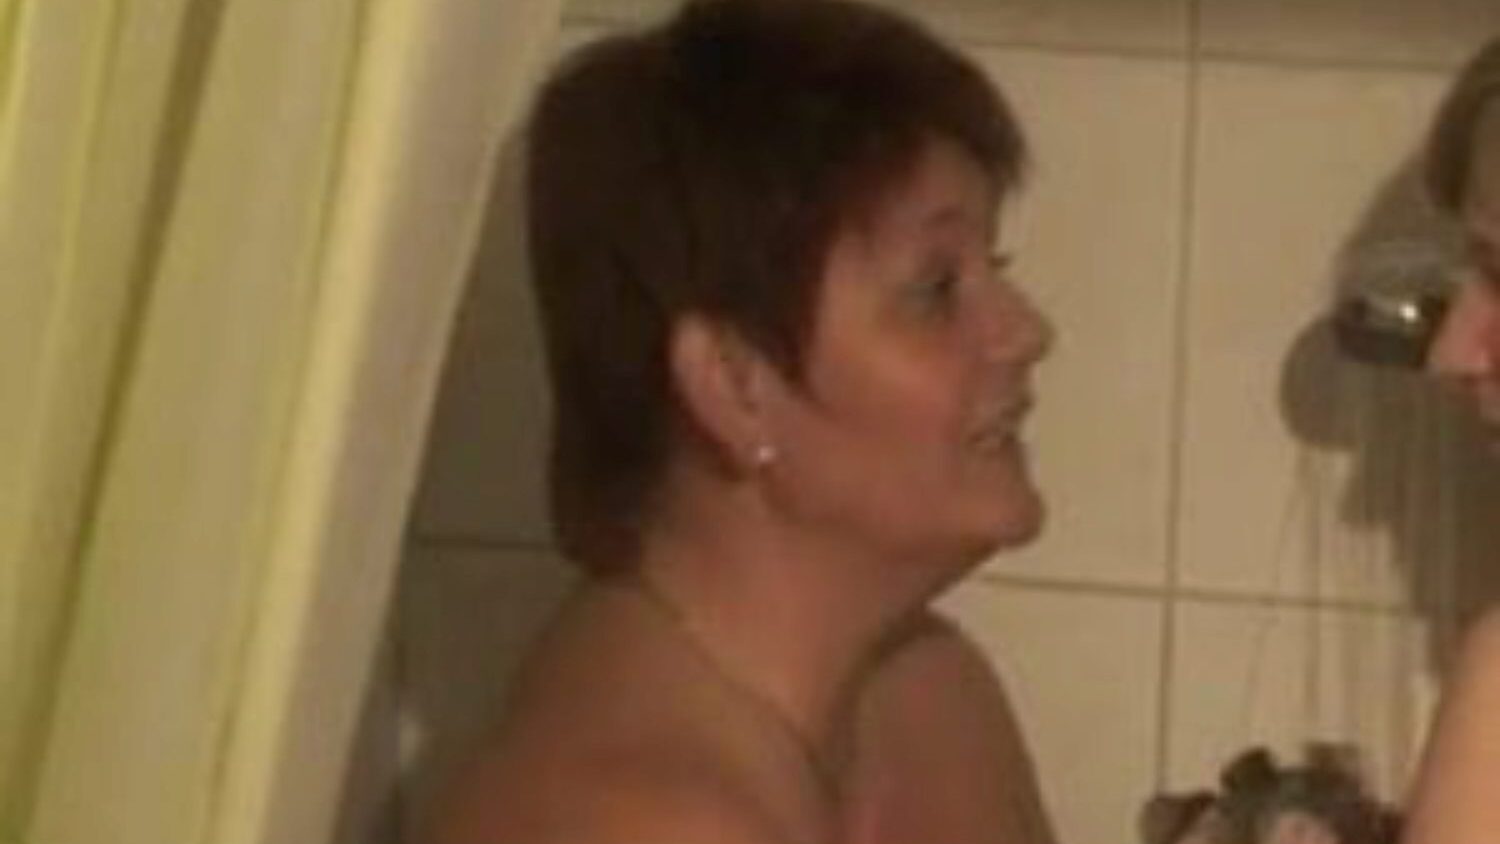 dwie bi-dziewczyny pod prysznicem: darmowe lesbijskie filmy porno 76 - xhamster oglądają 2 bi-dziewczyny biorące prysznic w kanale o seksie za darmo na xhamster, z dominującą kolekcją niemieckich lesbijek, matek, które chciałbym pieprzyć i pornografii bbw sekwencje filmowe